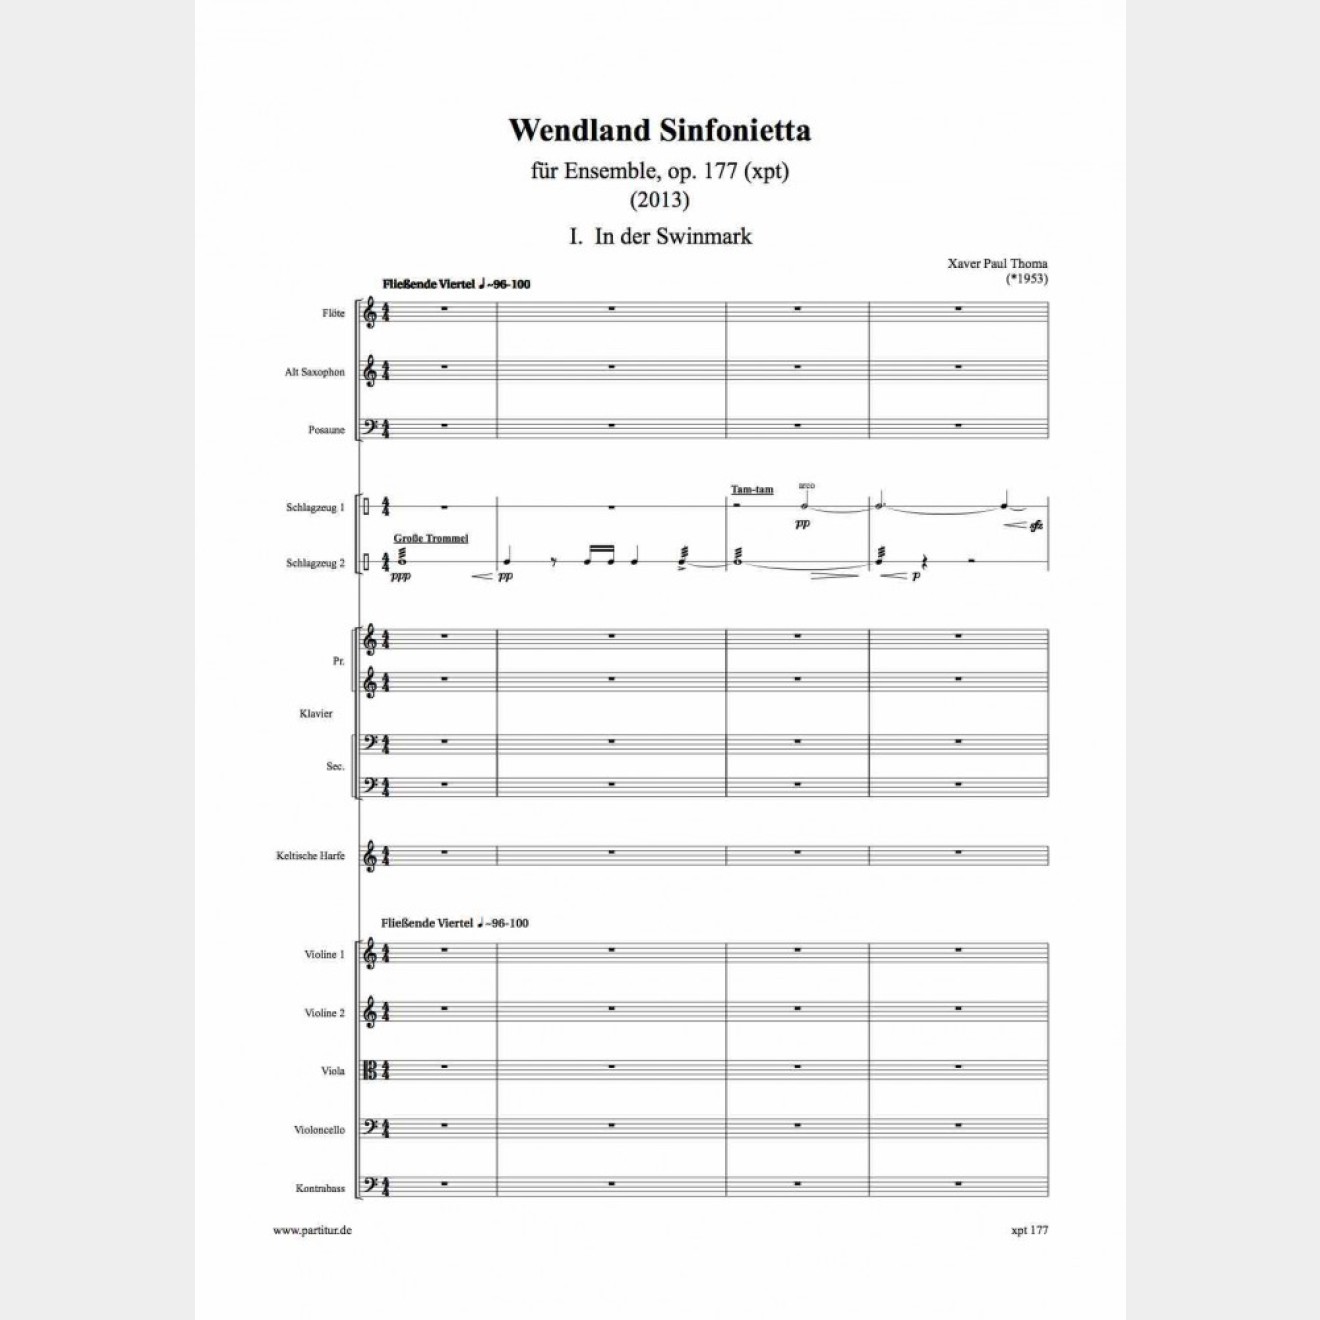 WENDLAND SINFONIETTA opus 177 for ensemble, 17`